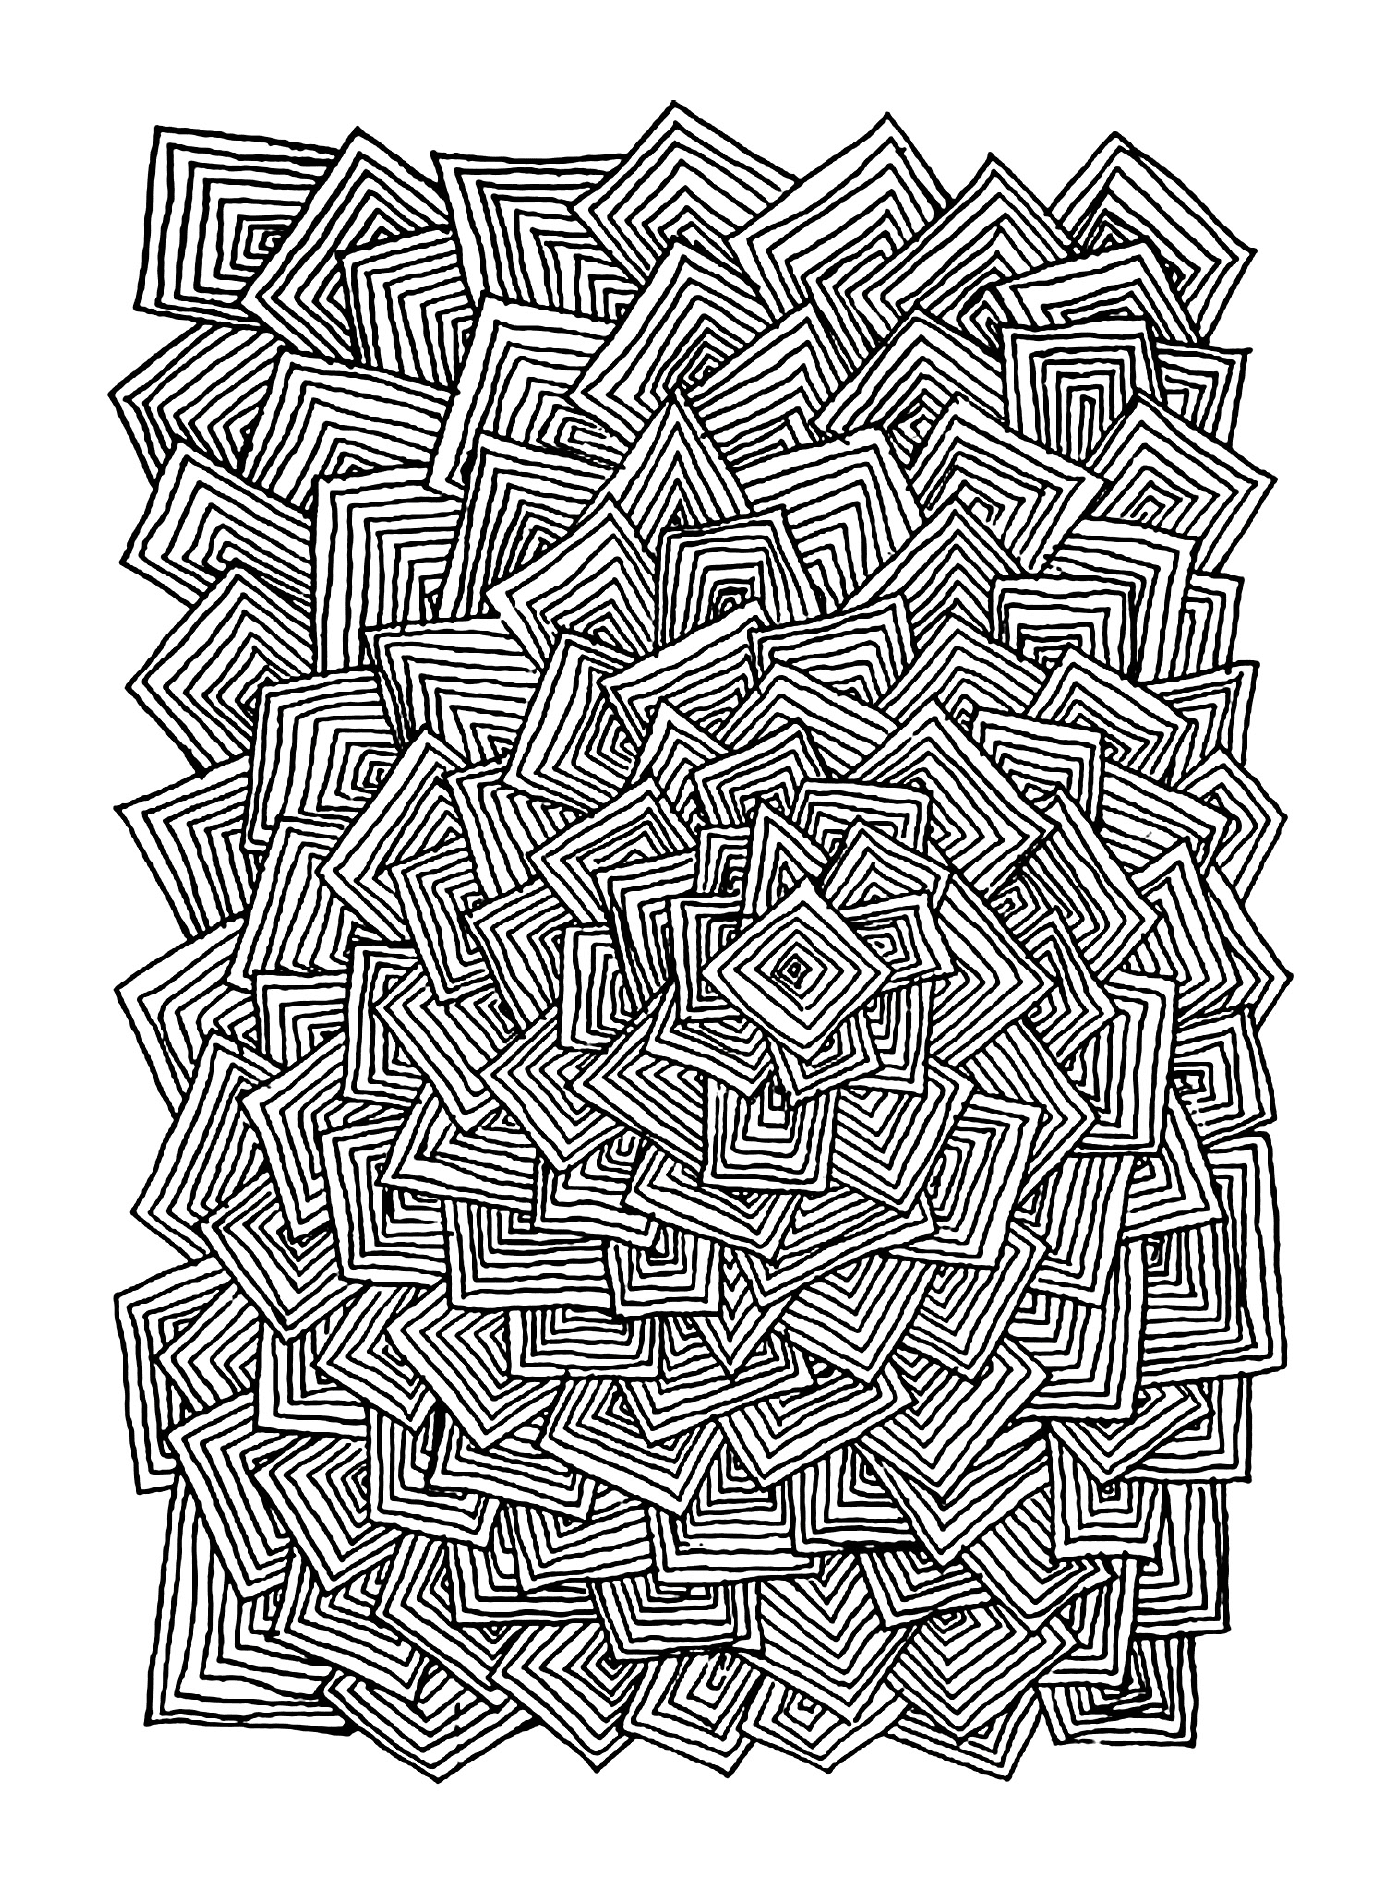   un motif abstrait fait de carrés 